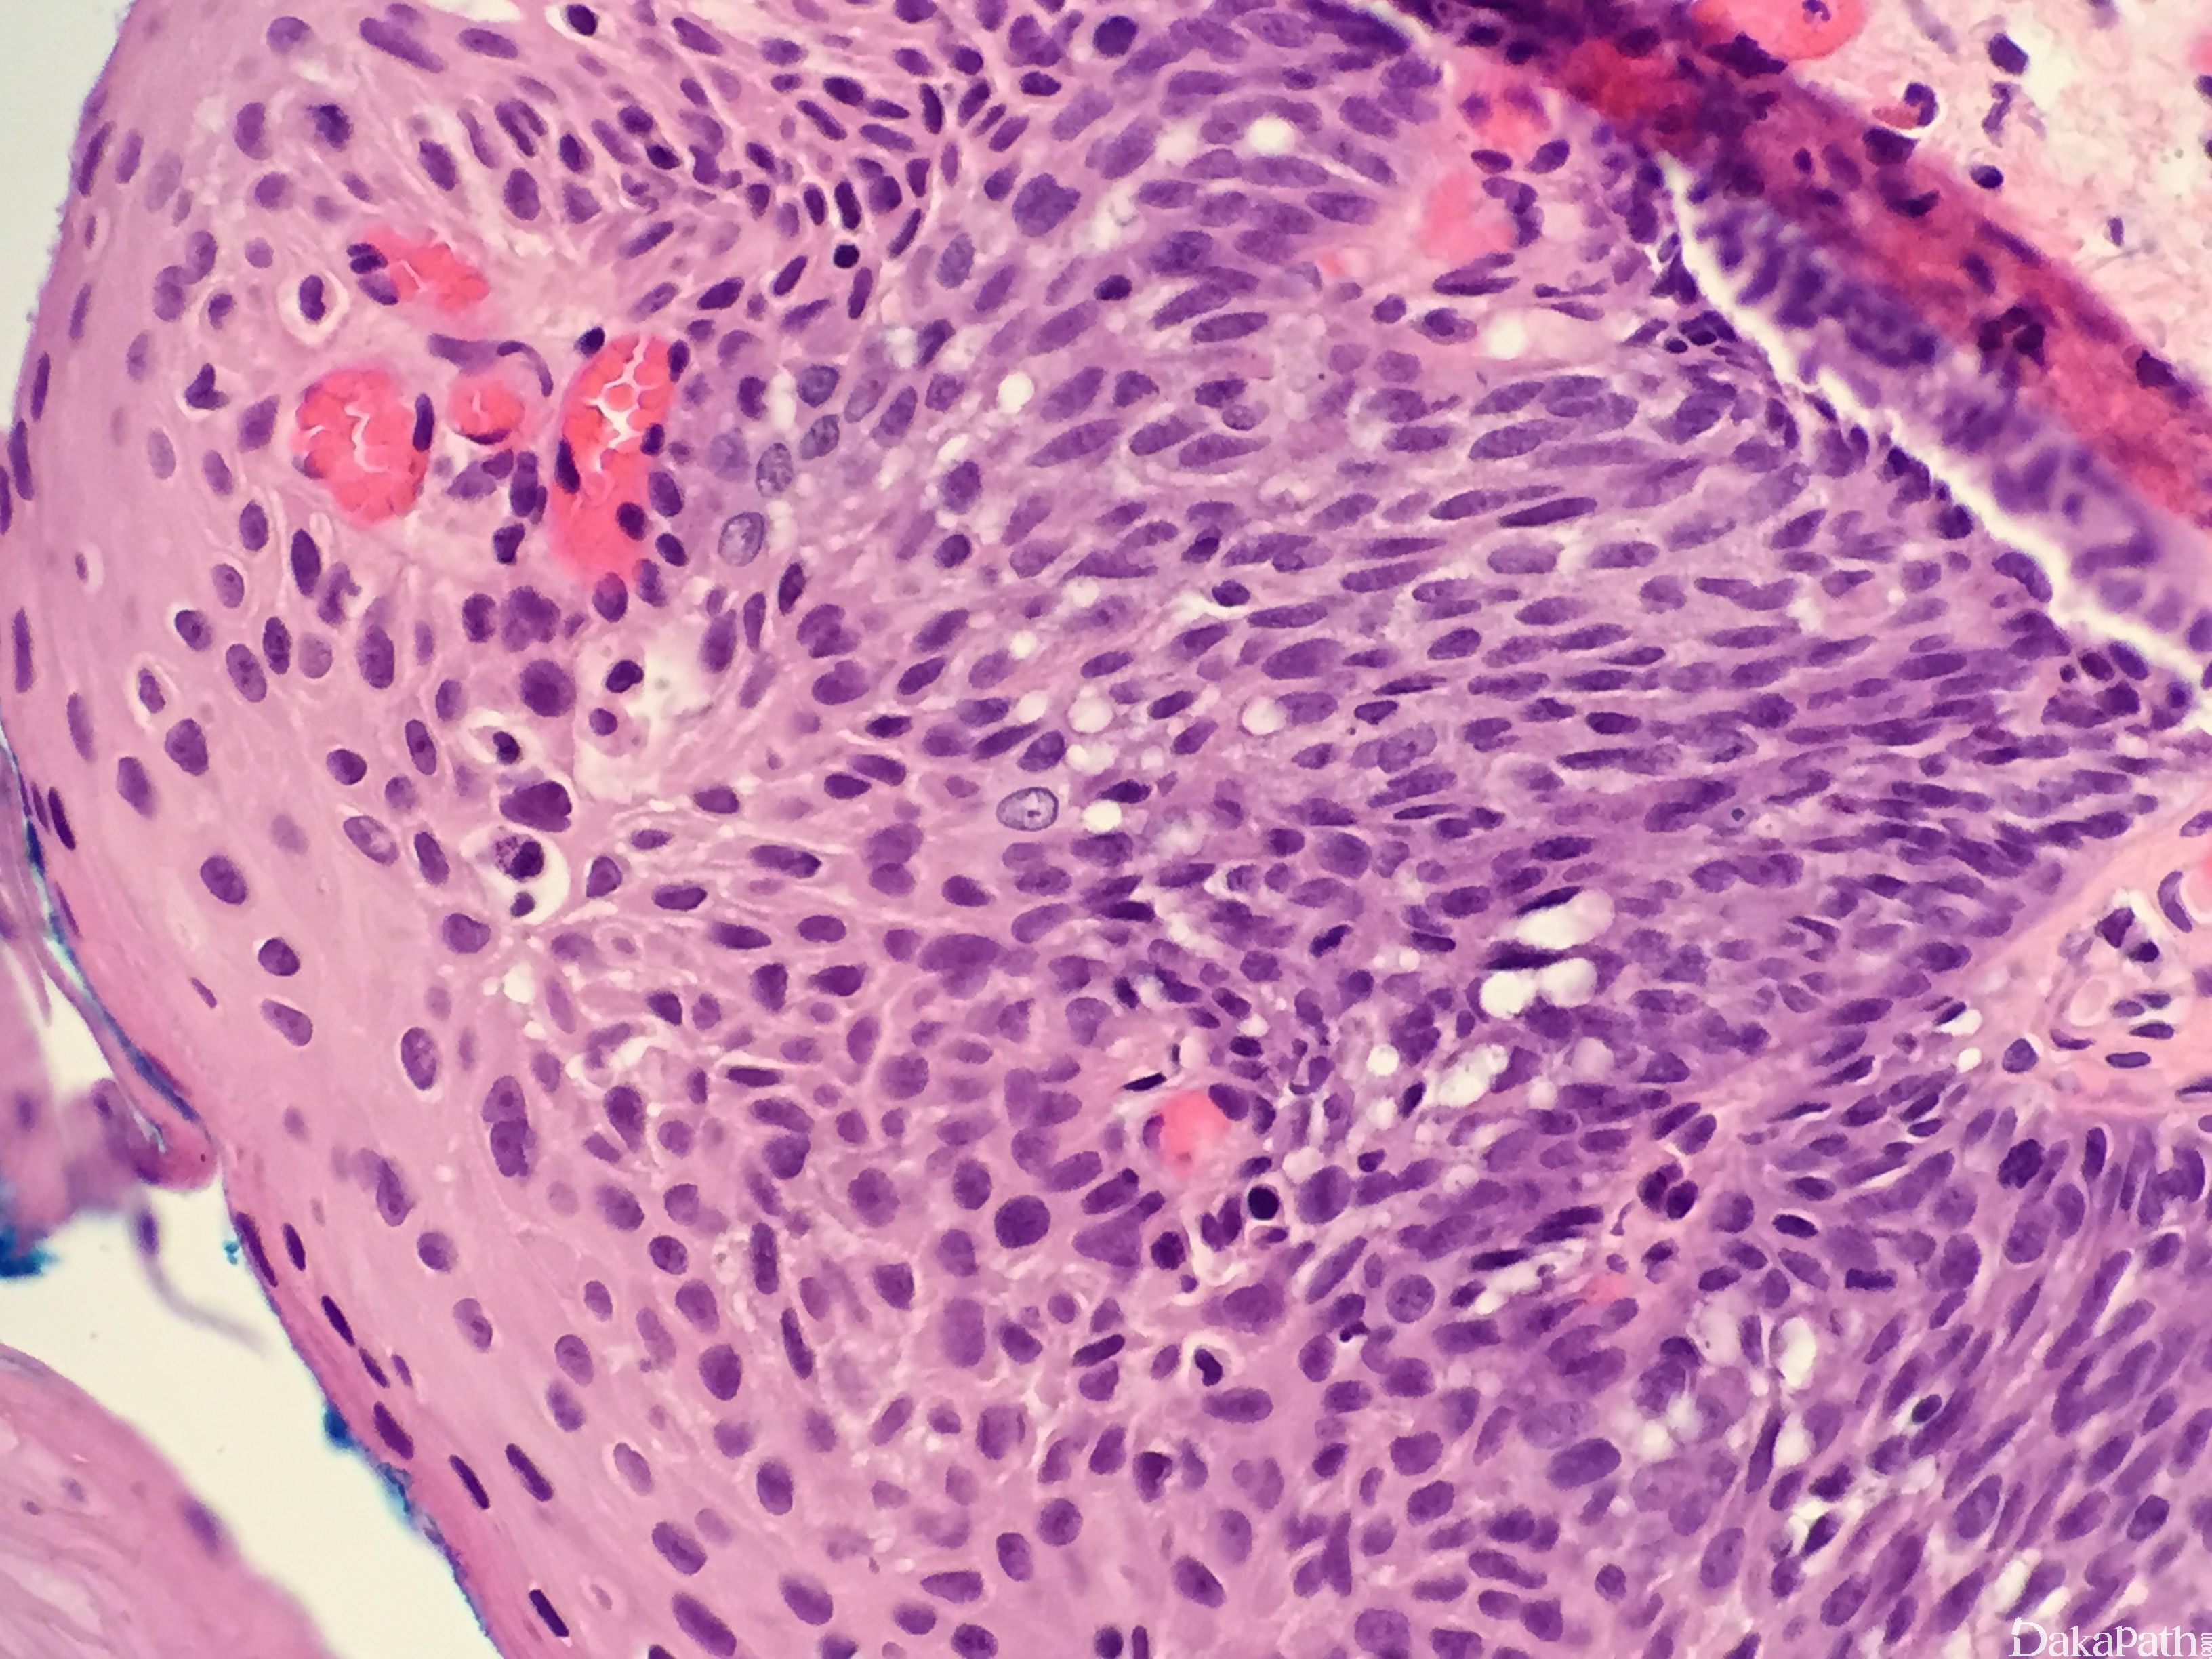 梭形细胞鳞状细胞癌